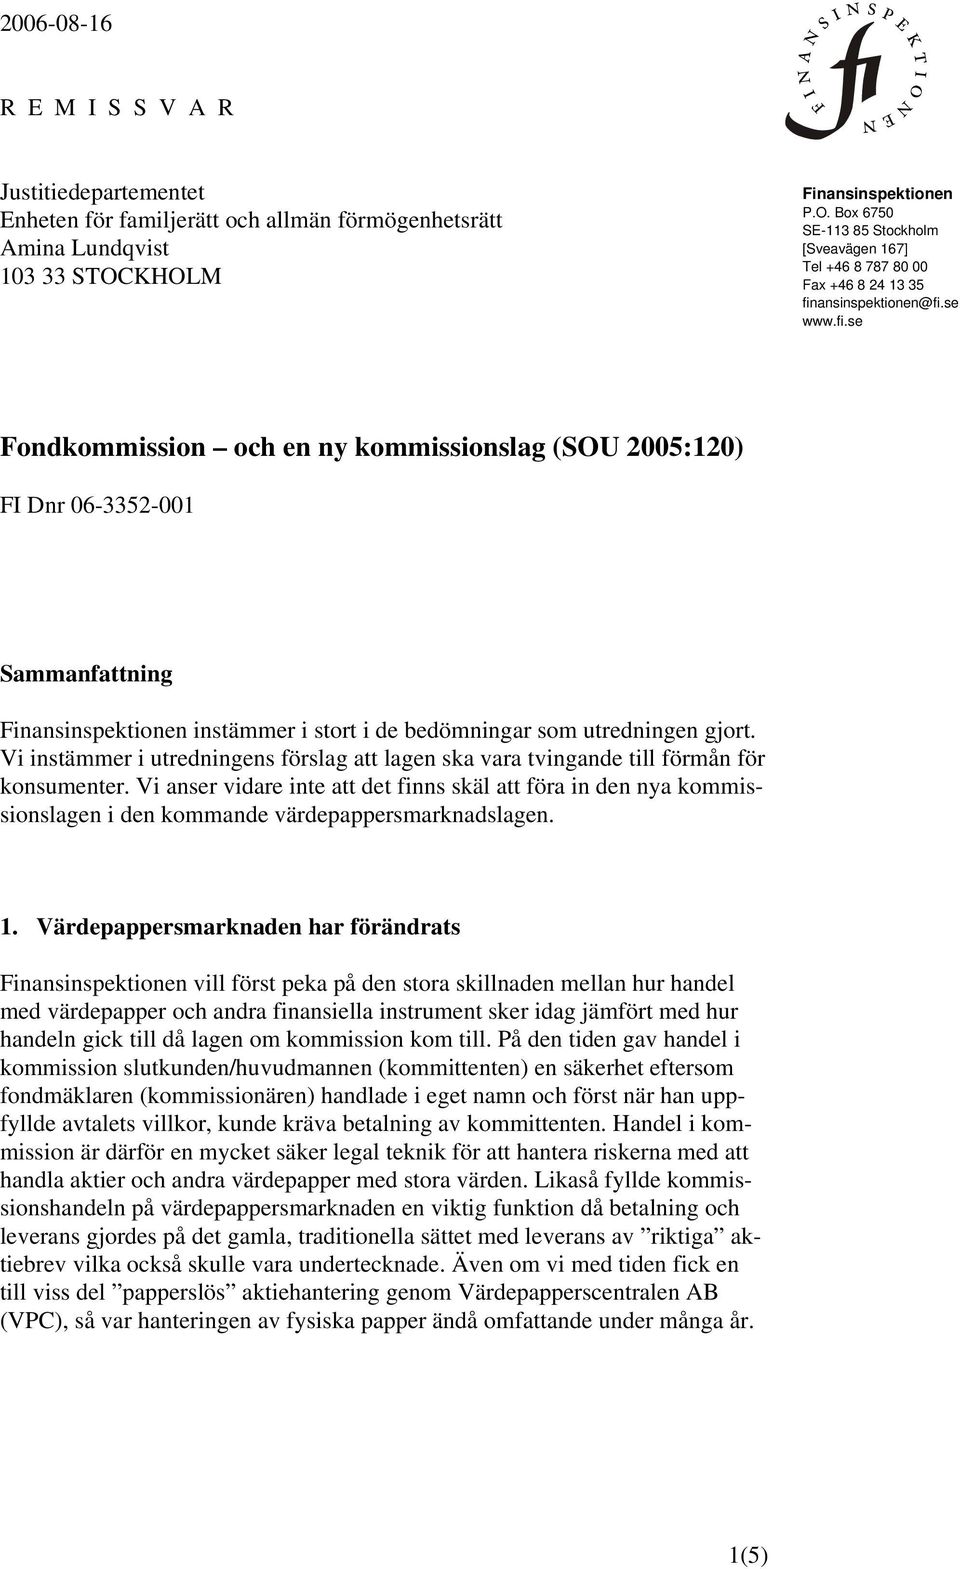 ansinspektionen@fi.se www.fi.se Fondkommission och en ny kommissionslag (SOU 2005:120) FI Dnr 06-3352-001 Sammanfattning Finansinspektionen instämmer i stort i de bedömningar som utredningen gjort.